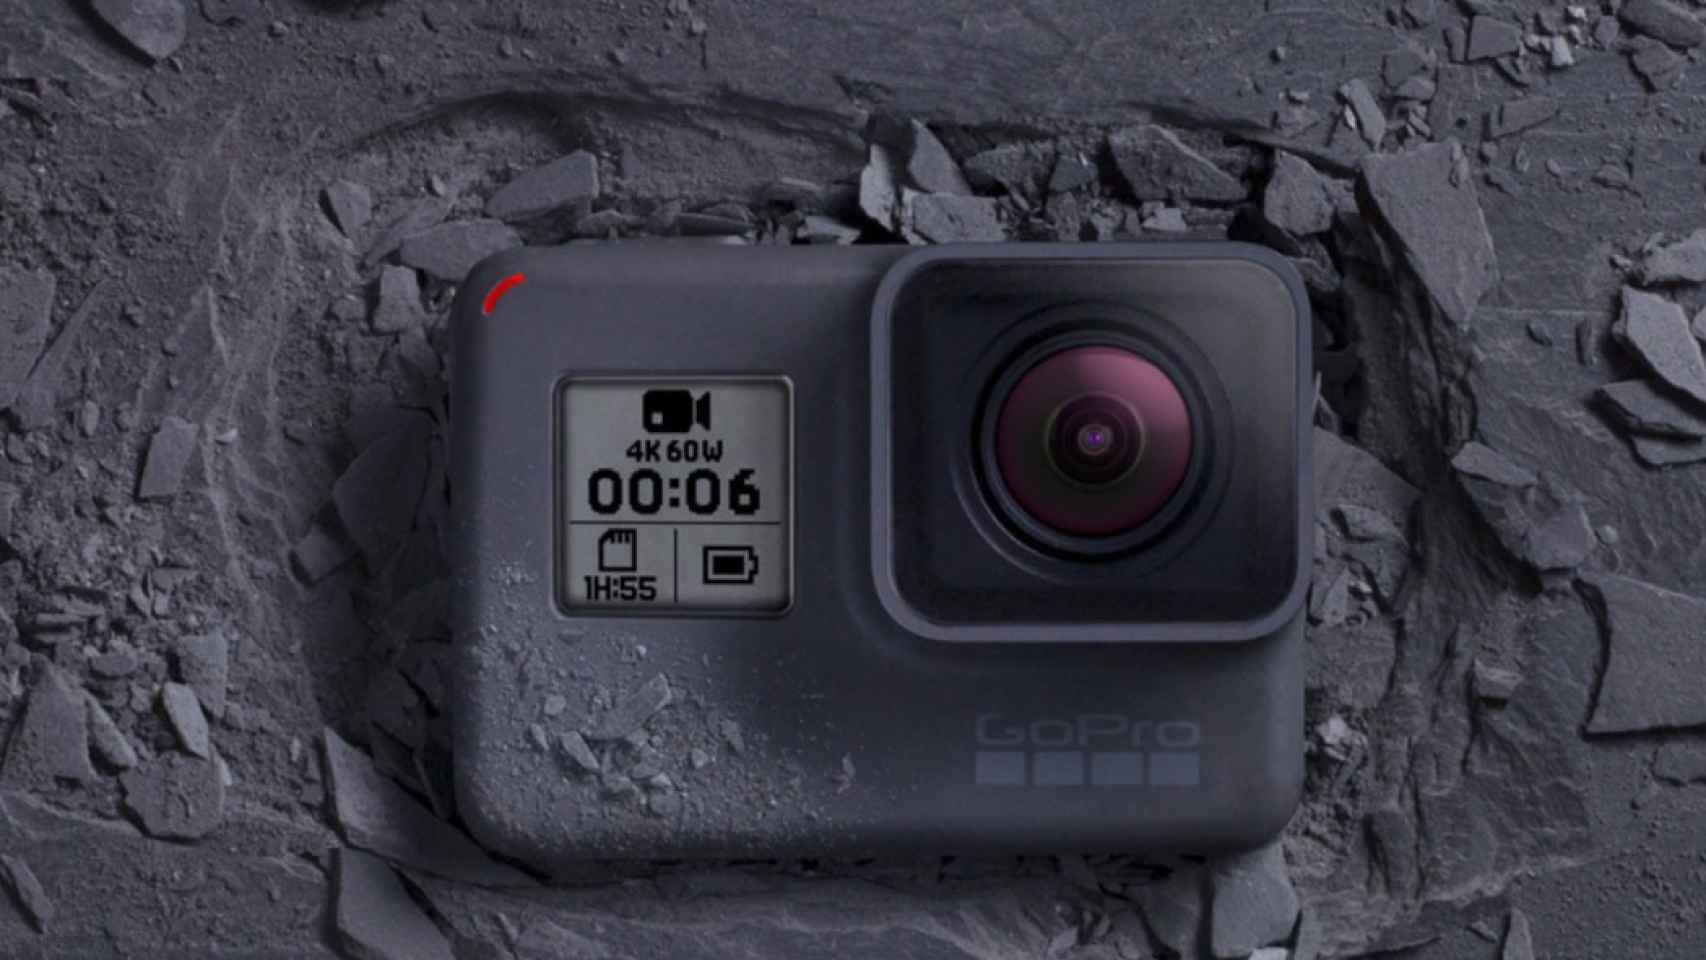 Rebajar micro Mancha GoPro Hero6 Black: 4K a 60 FPS y estabilización de imagen electrónica